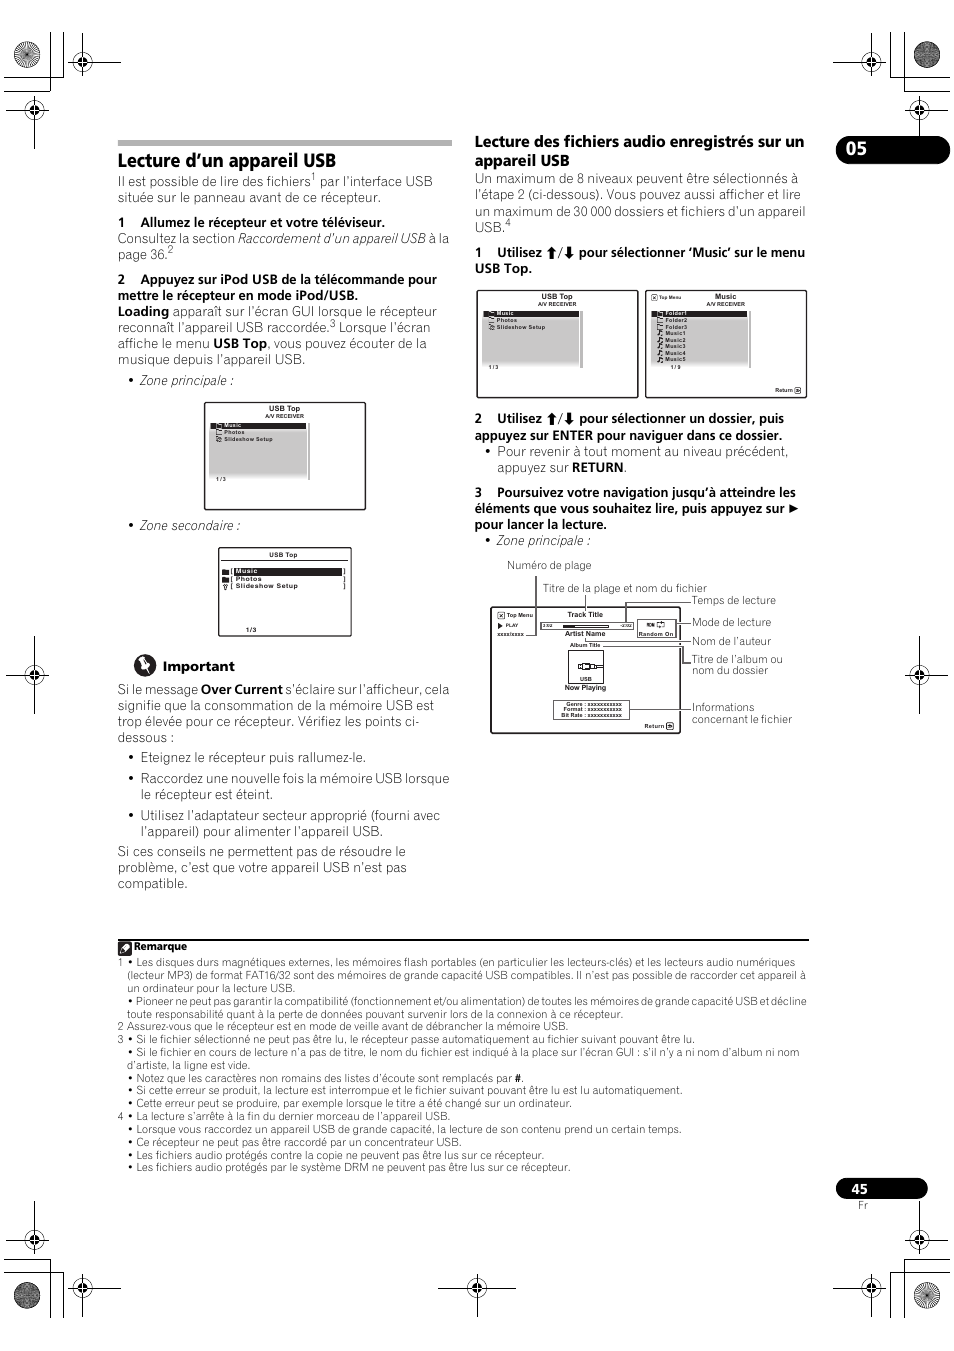 Lecture d’un appareil usb, 05 lecture d’un appareil usb | Pioneer VSX-LX52 Manuel d'utilisation | Page 45 / 114